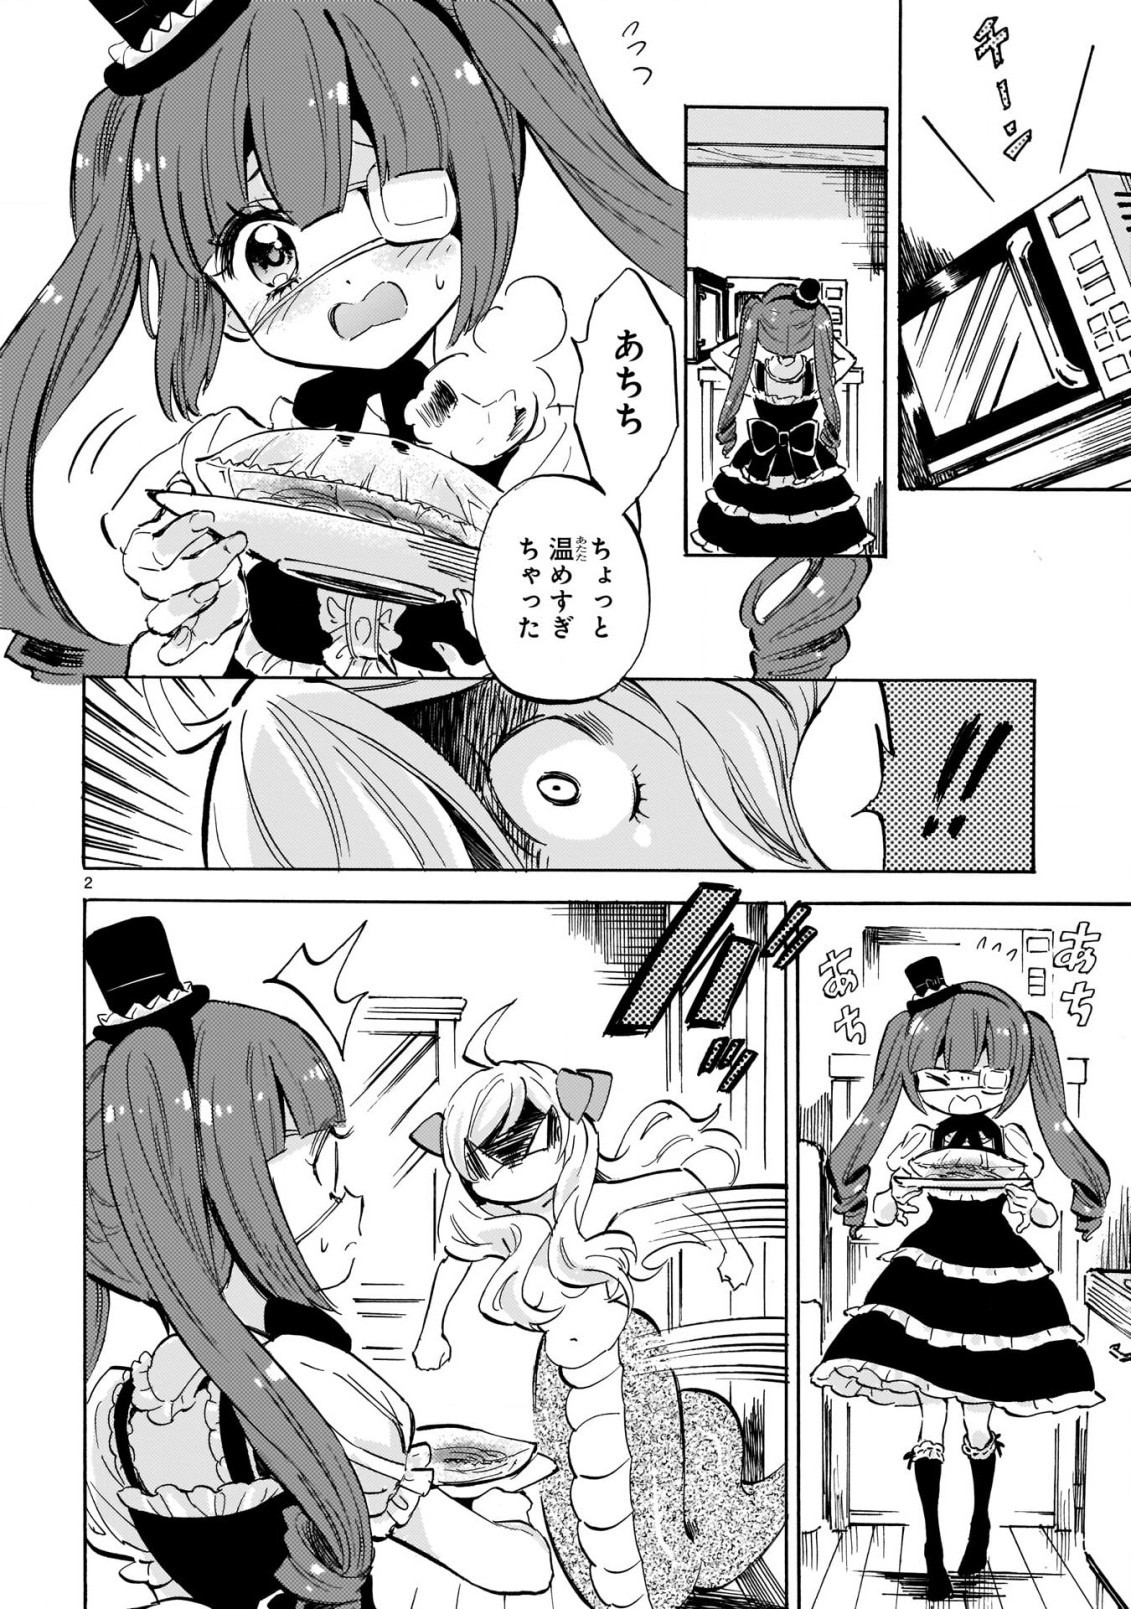 Jashin-chan Dropkick - Chapter 198 - Page 2